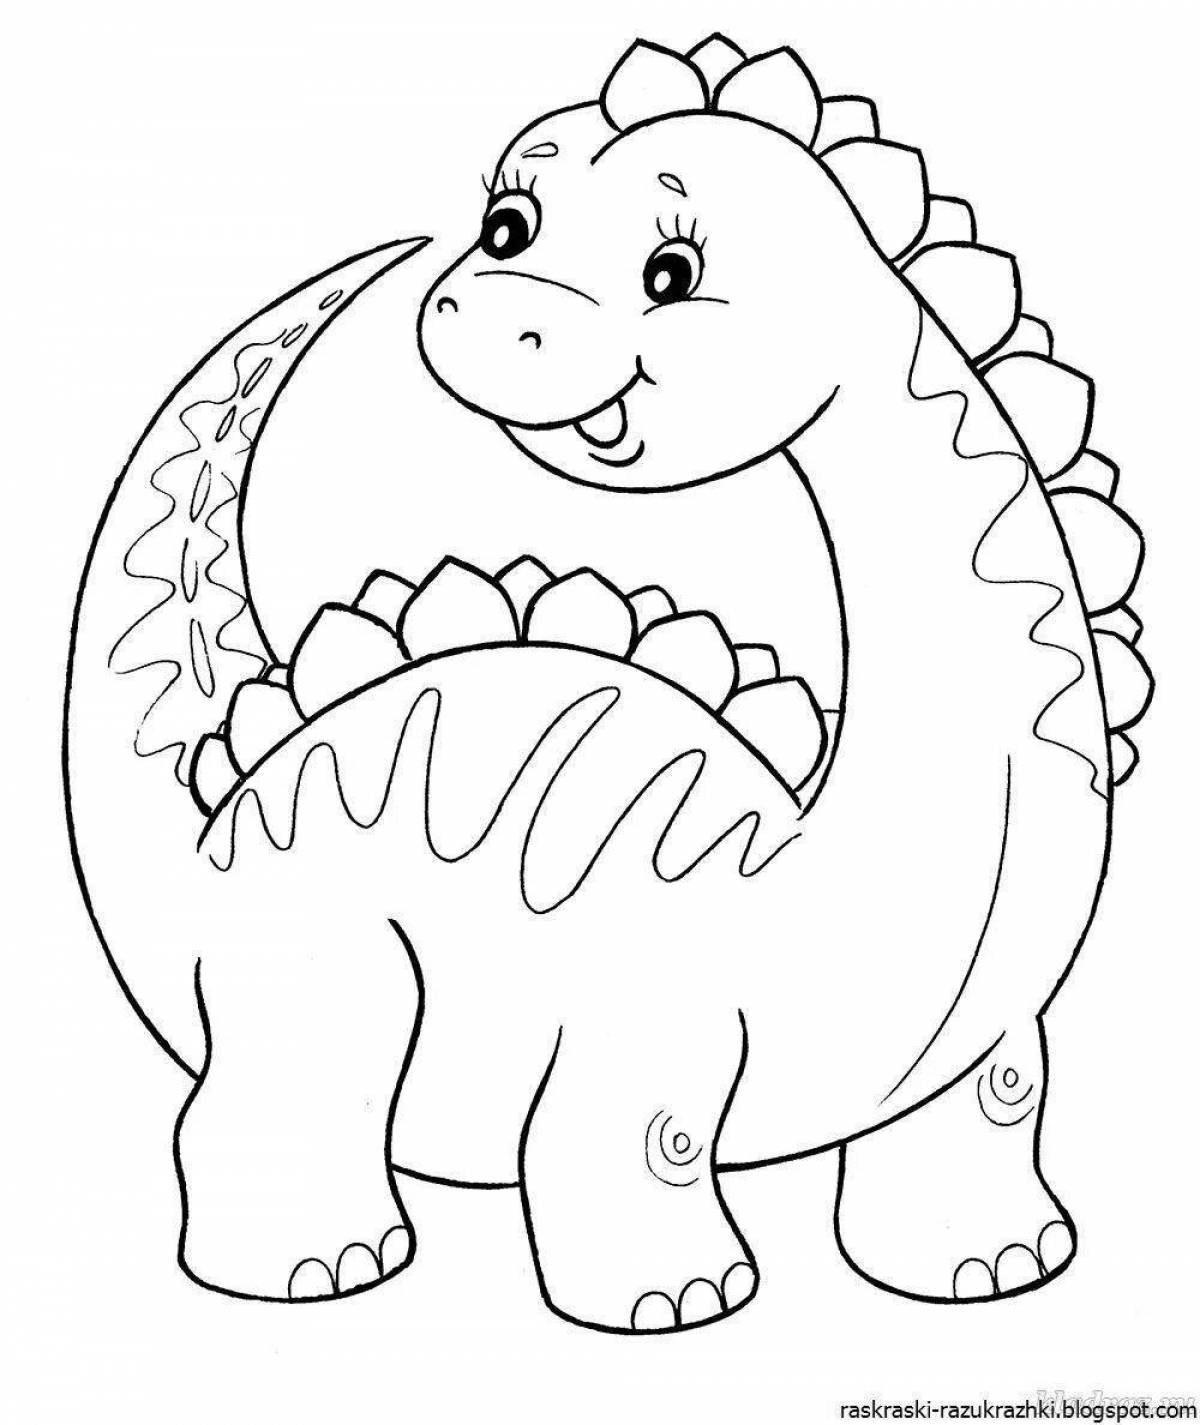 Раскраска очаровательный динозавр для детей